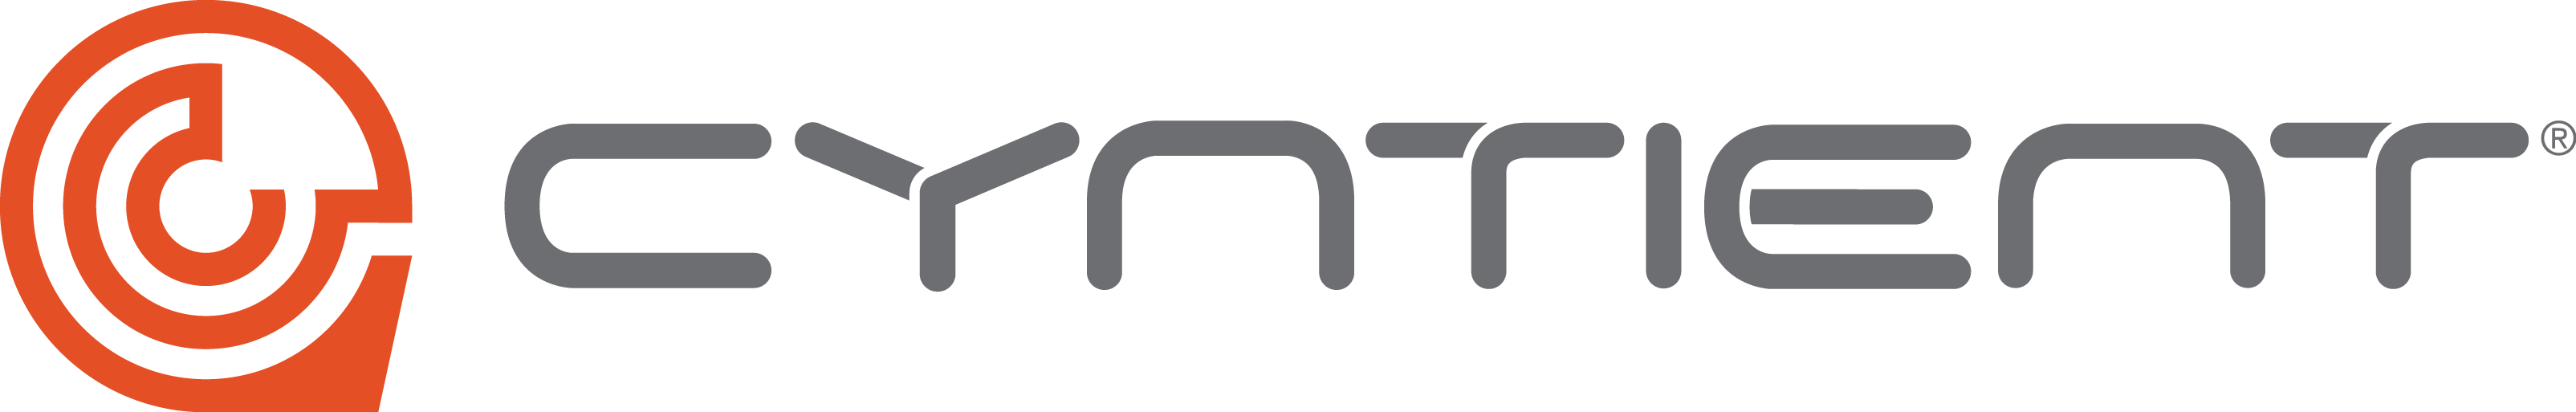 Cyntient Logo